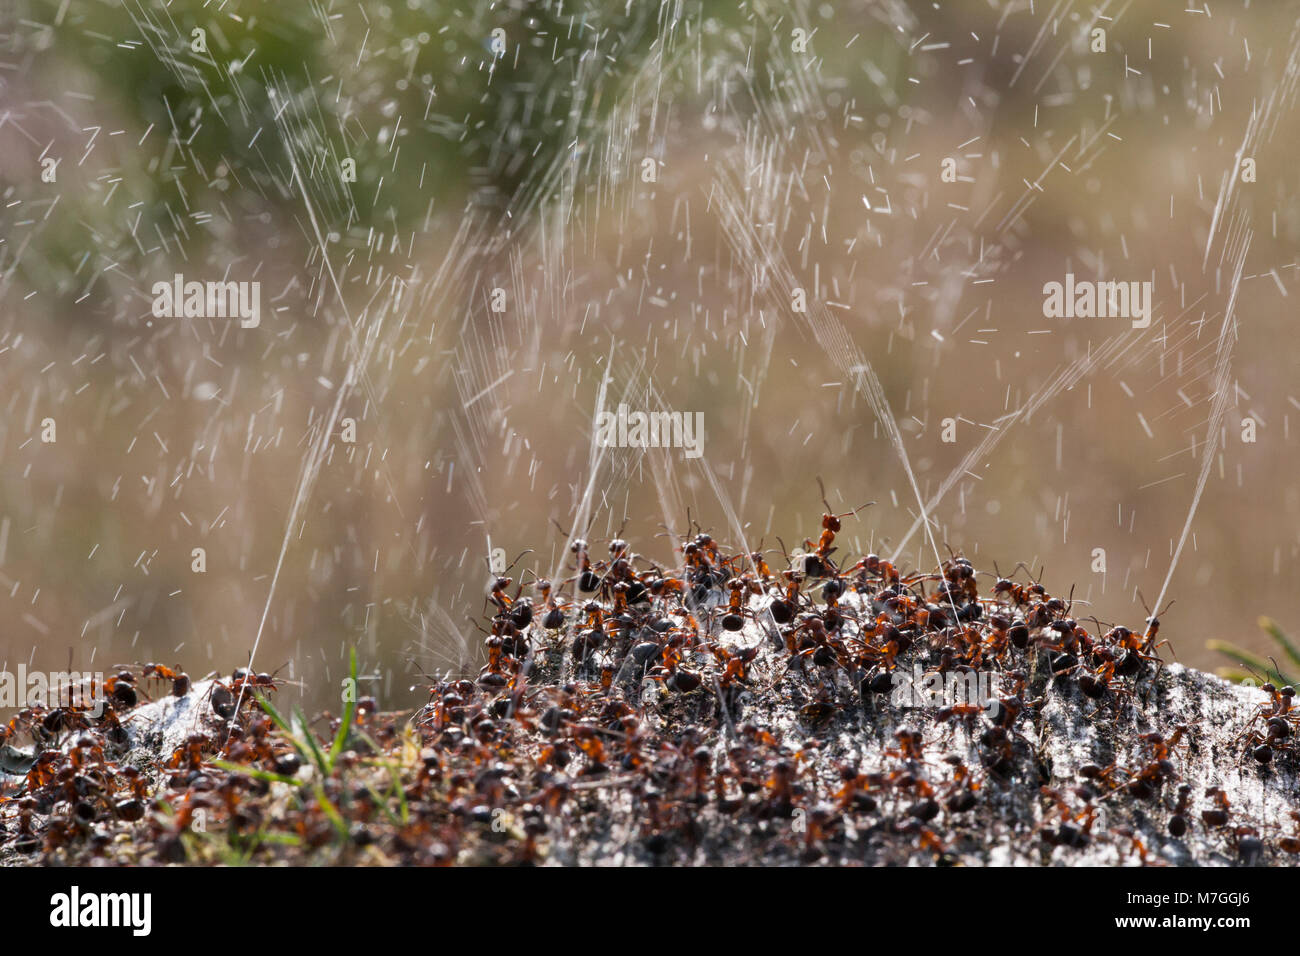 Waldameisen - Formica rufa-verteidigt ihr Nest durch Spritzen Ameisensäure. Die Ameisensäure wird verwendet, um die angreifenden Feinde abzuschrecken. Dorset England UK GB. Stockfoto